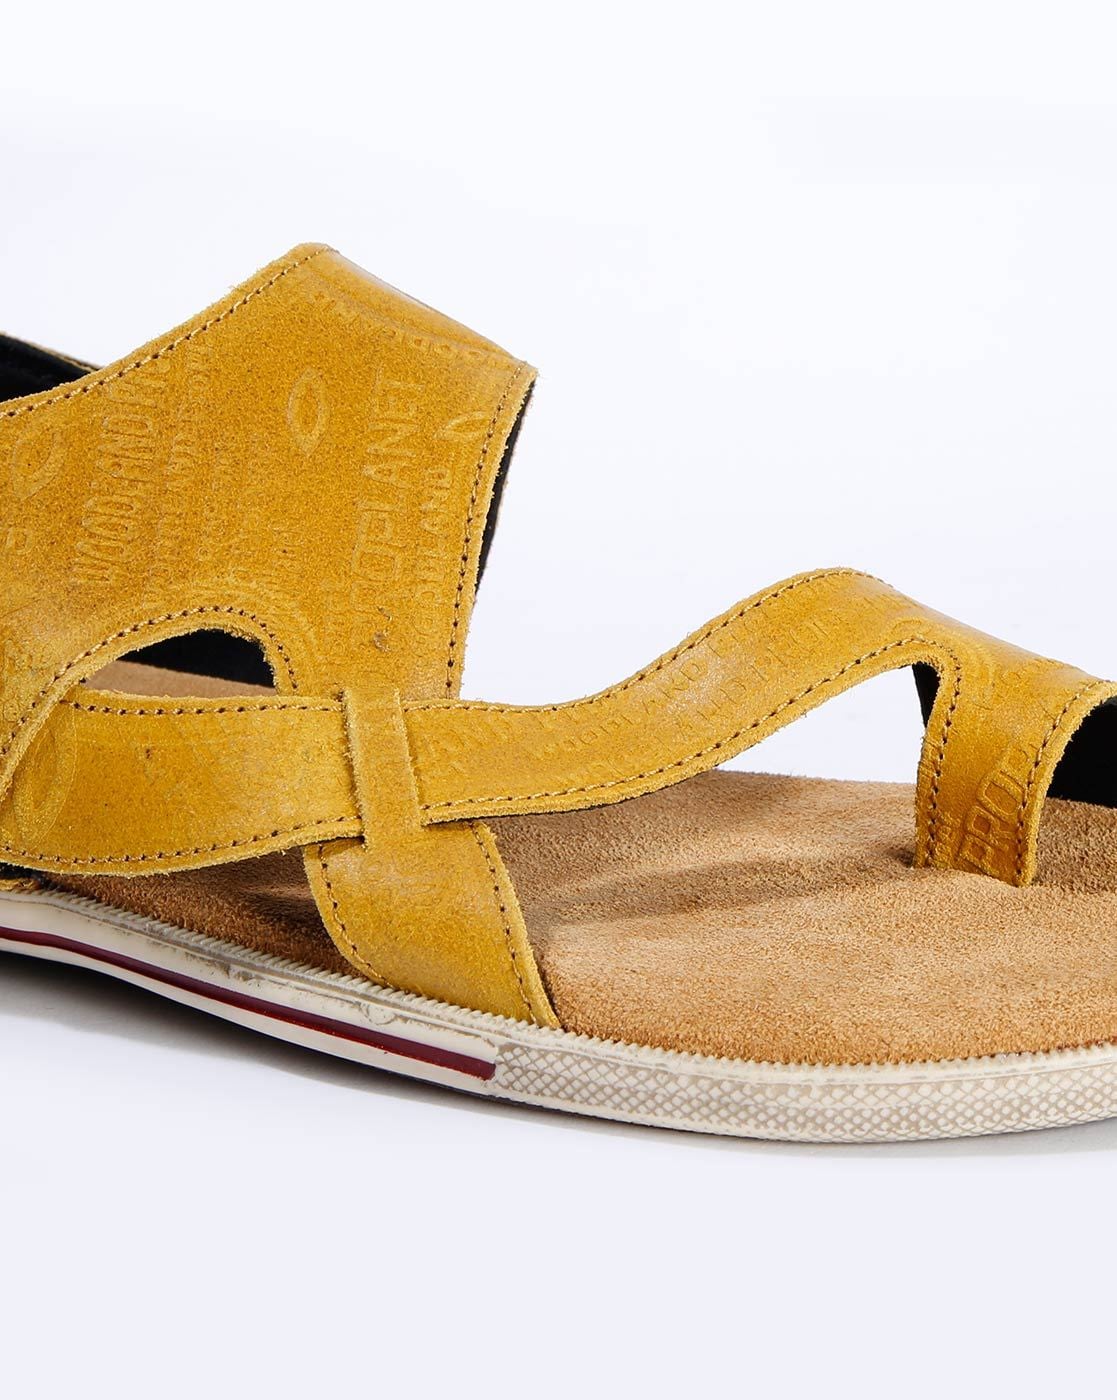 Barefoot Sandals - Be Lenka Flexi - Yellow | Be Lenka